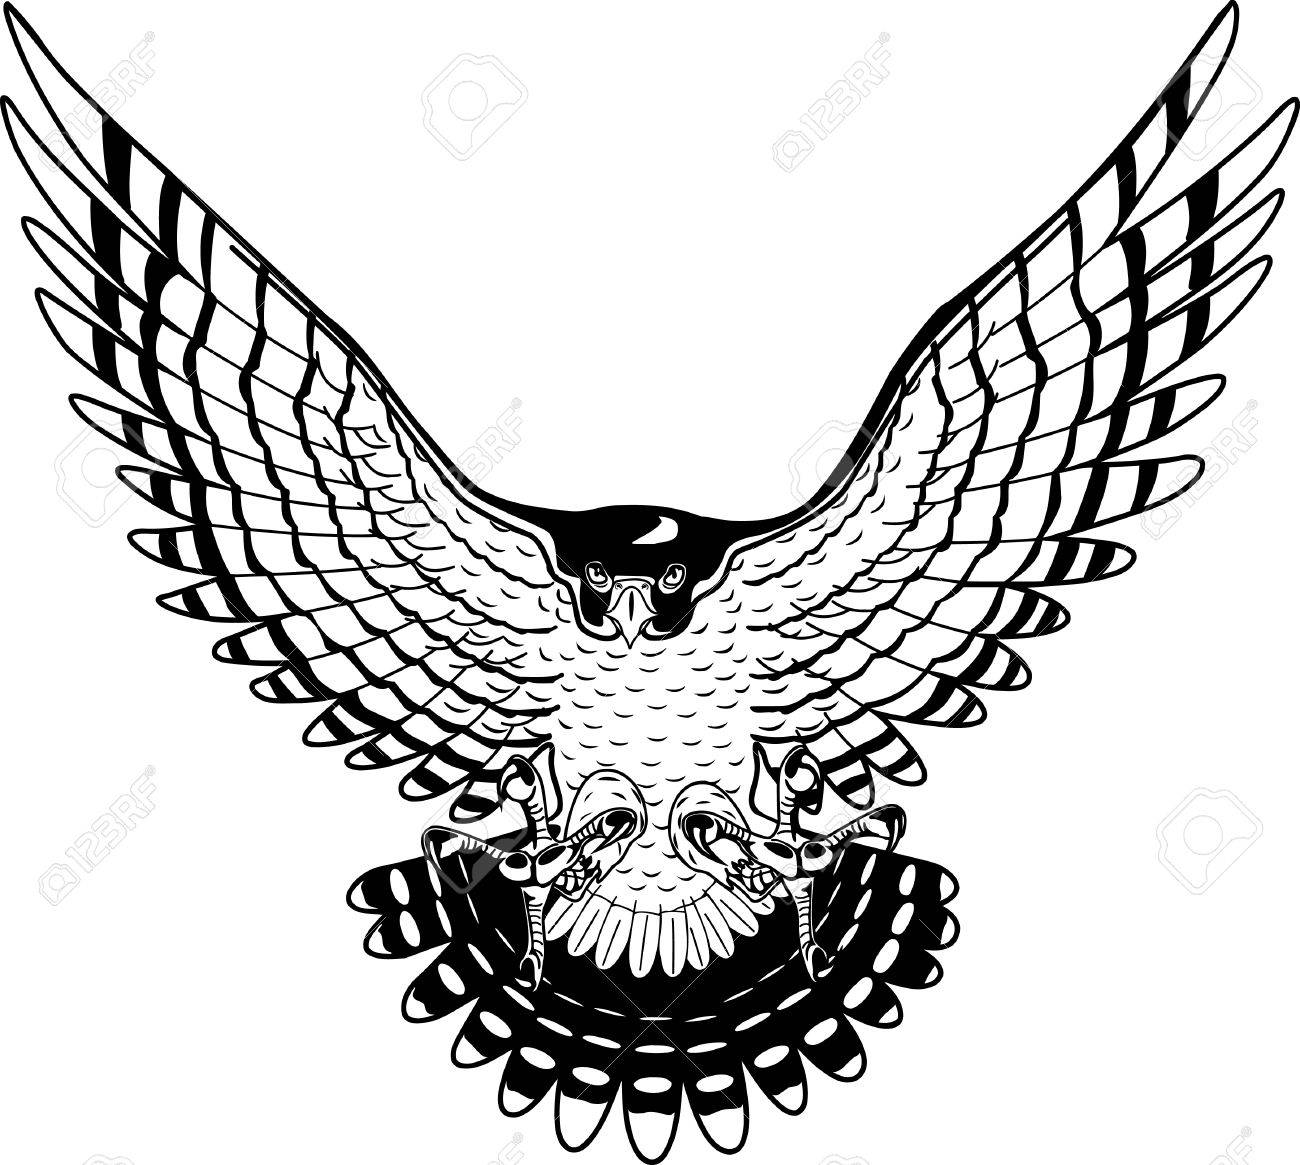 Peregrine Falcon illustration..